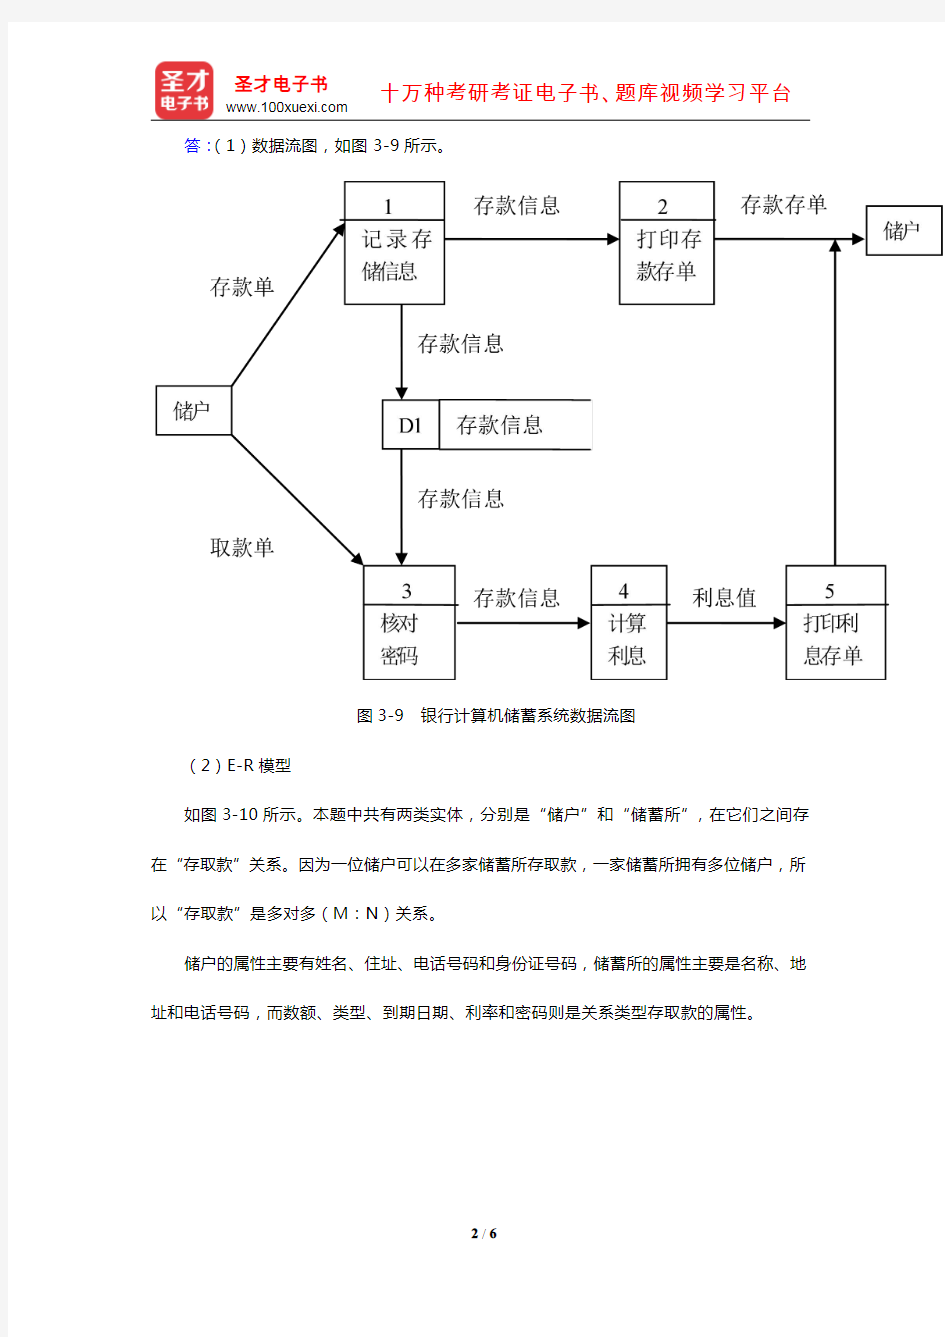 张海藩《软件工程导论》(第6版)(课后习题 第3章 需求分析)【圣才出品】